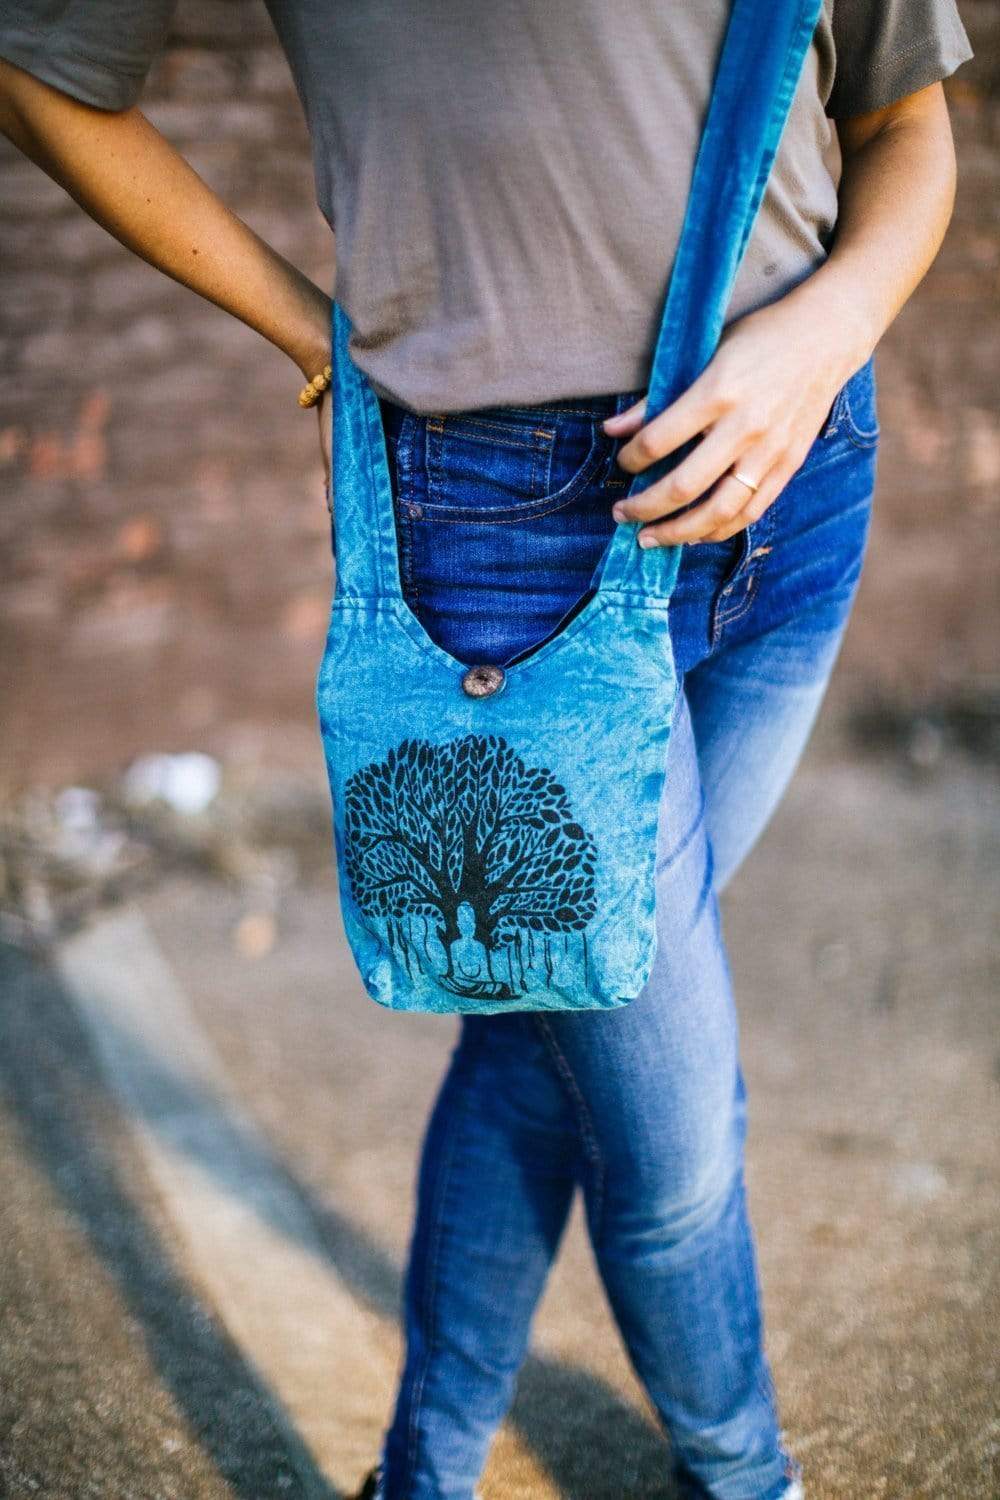 Tree of Life Crossbody Bag Blue | Cultural Elements